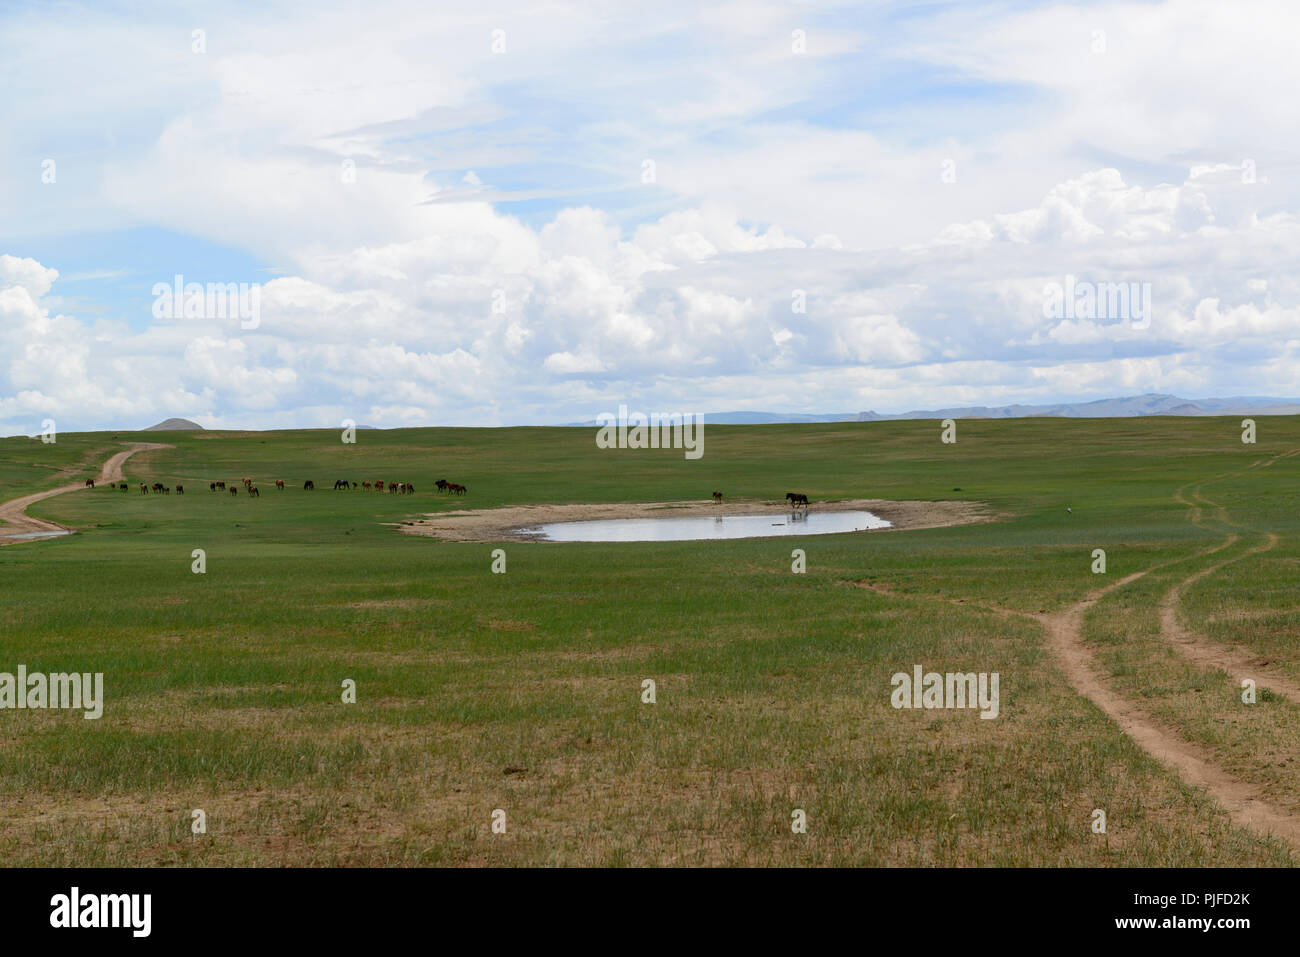 Un troupeau de chevaux en laissant une place potable sur la steppe d'Khovsgpl Province, la Mongolie. Banque D'Images